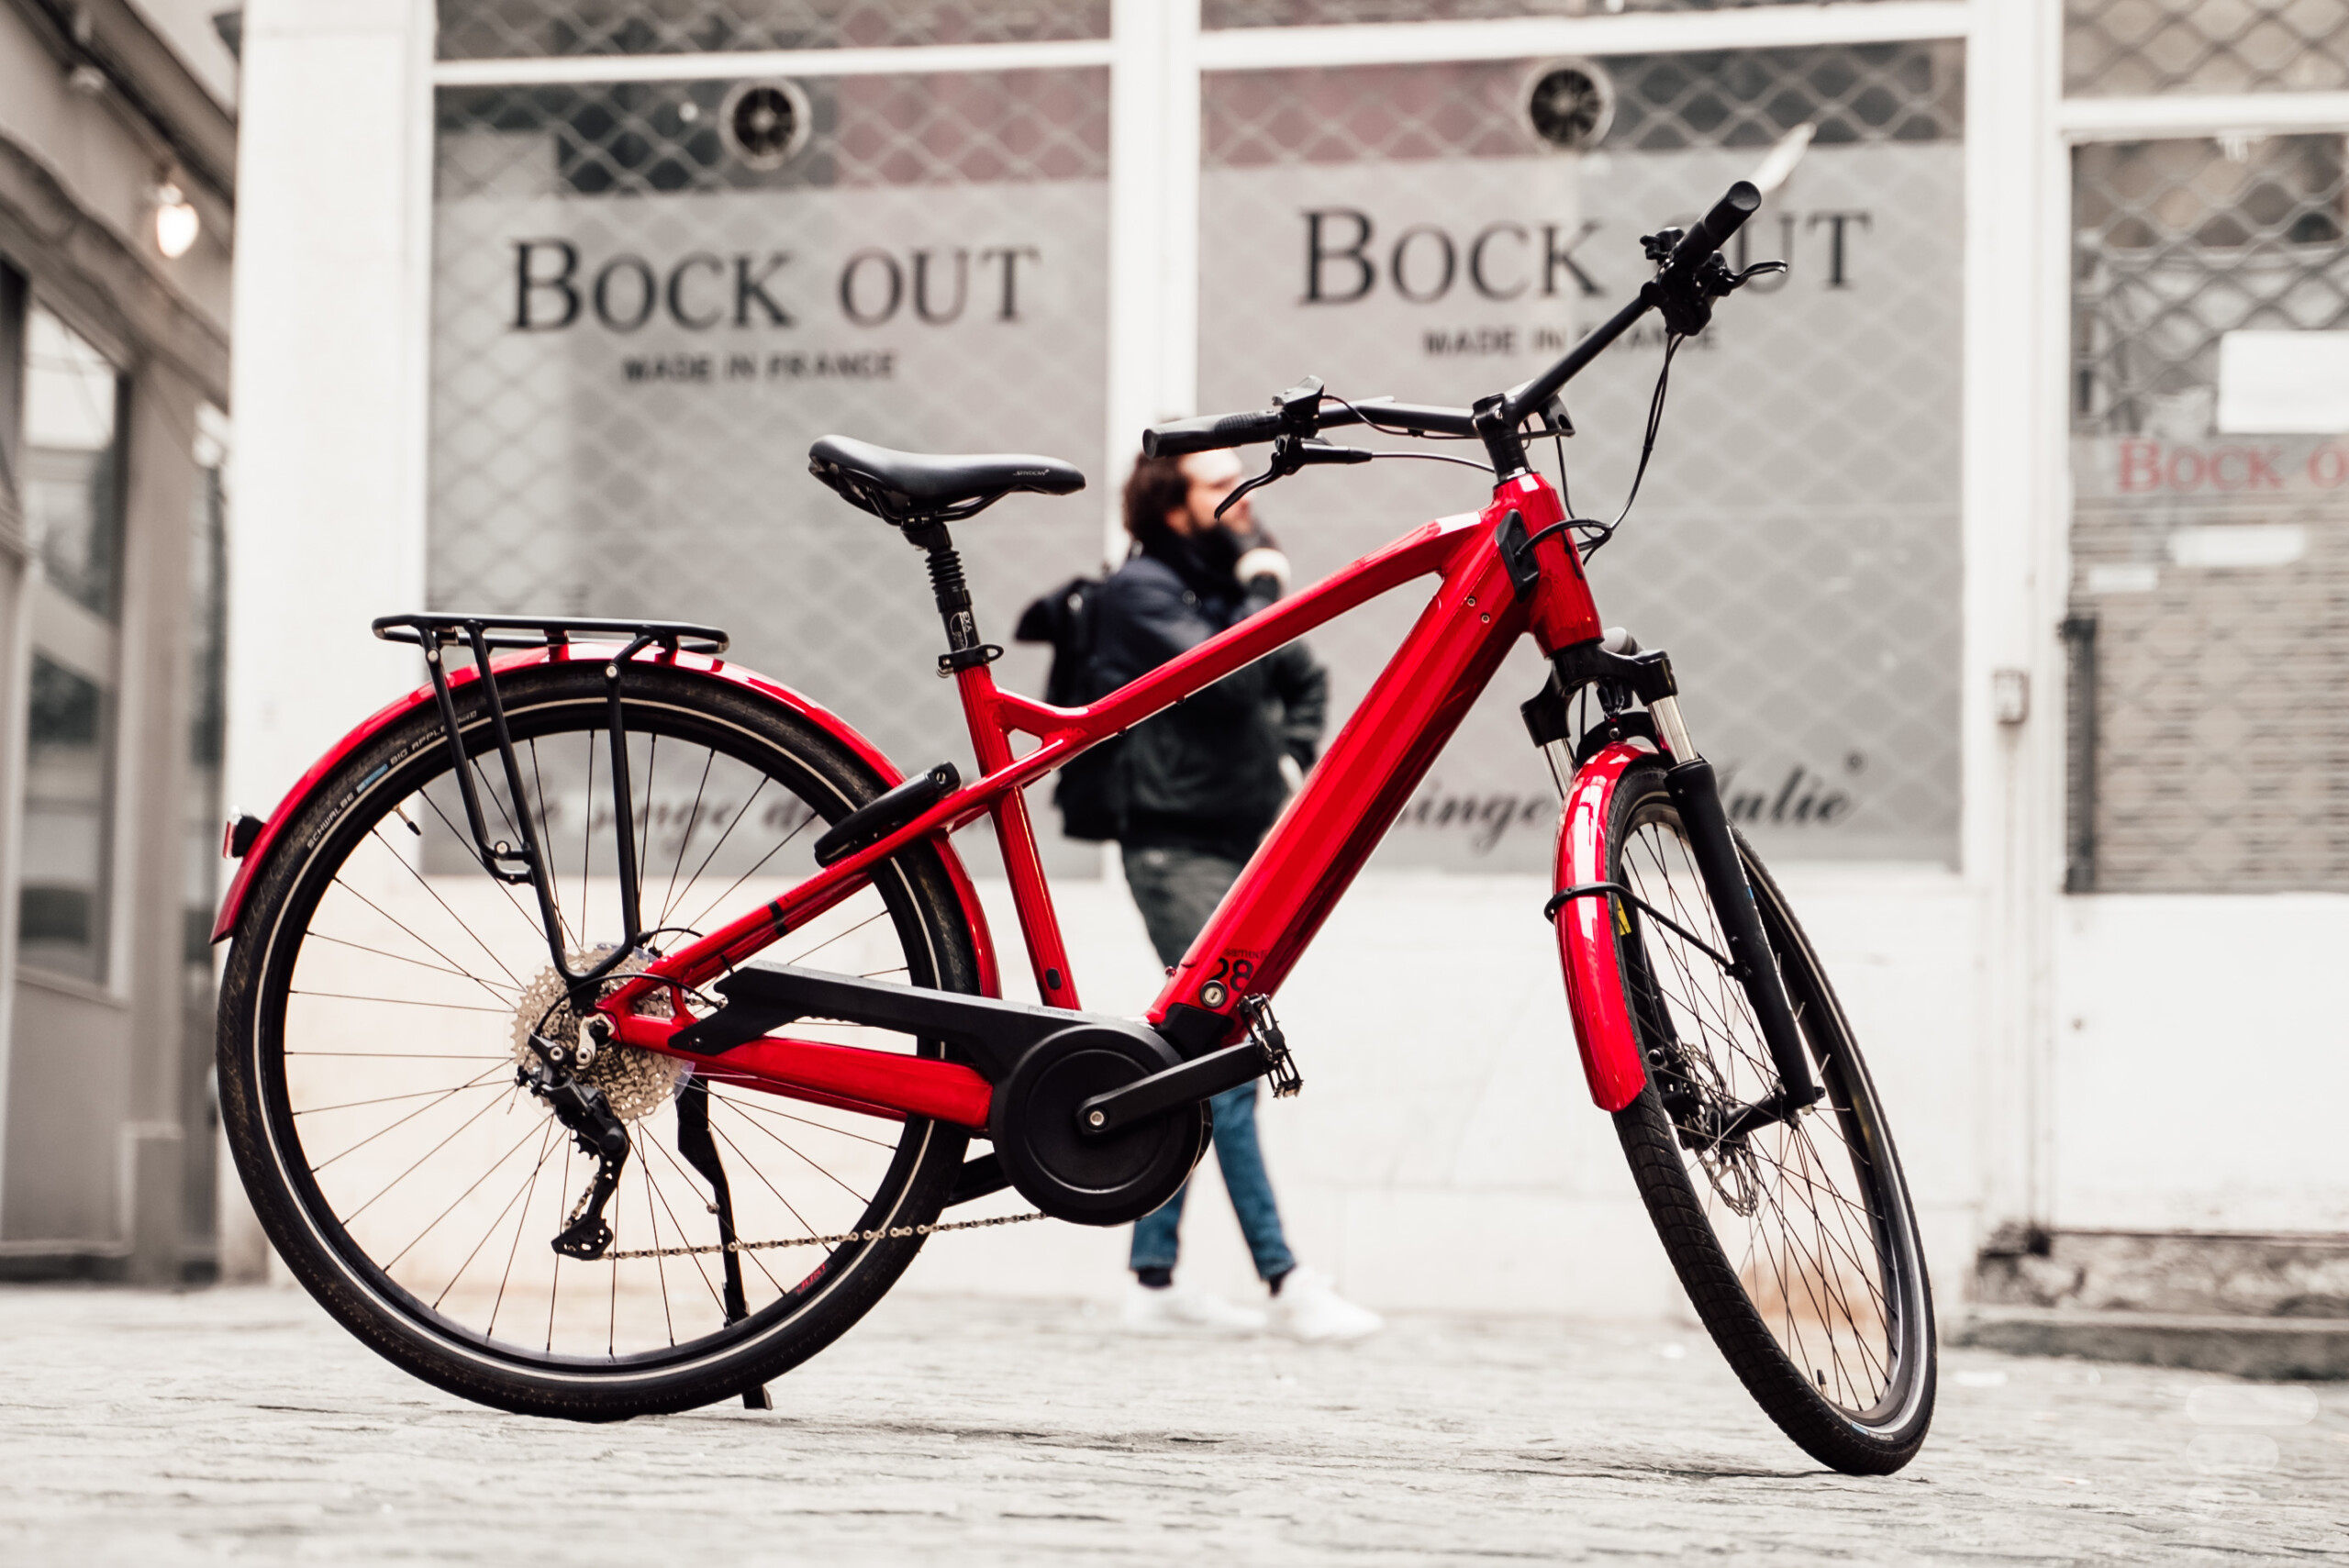 Vente flash hallucinante sur ce vélo électrique qui voit son prix fondre de  62% - Le Parisien